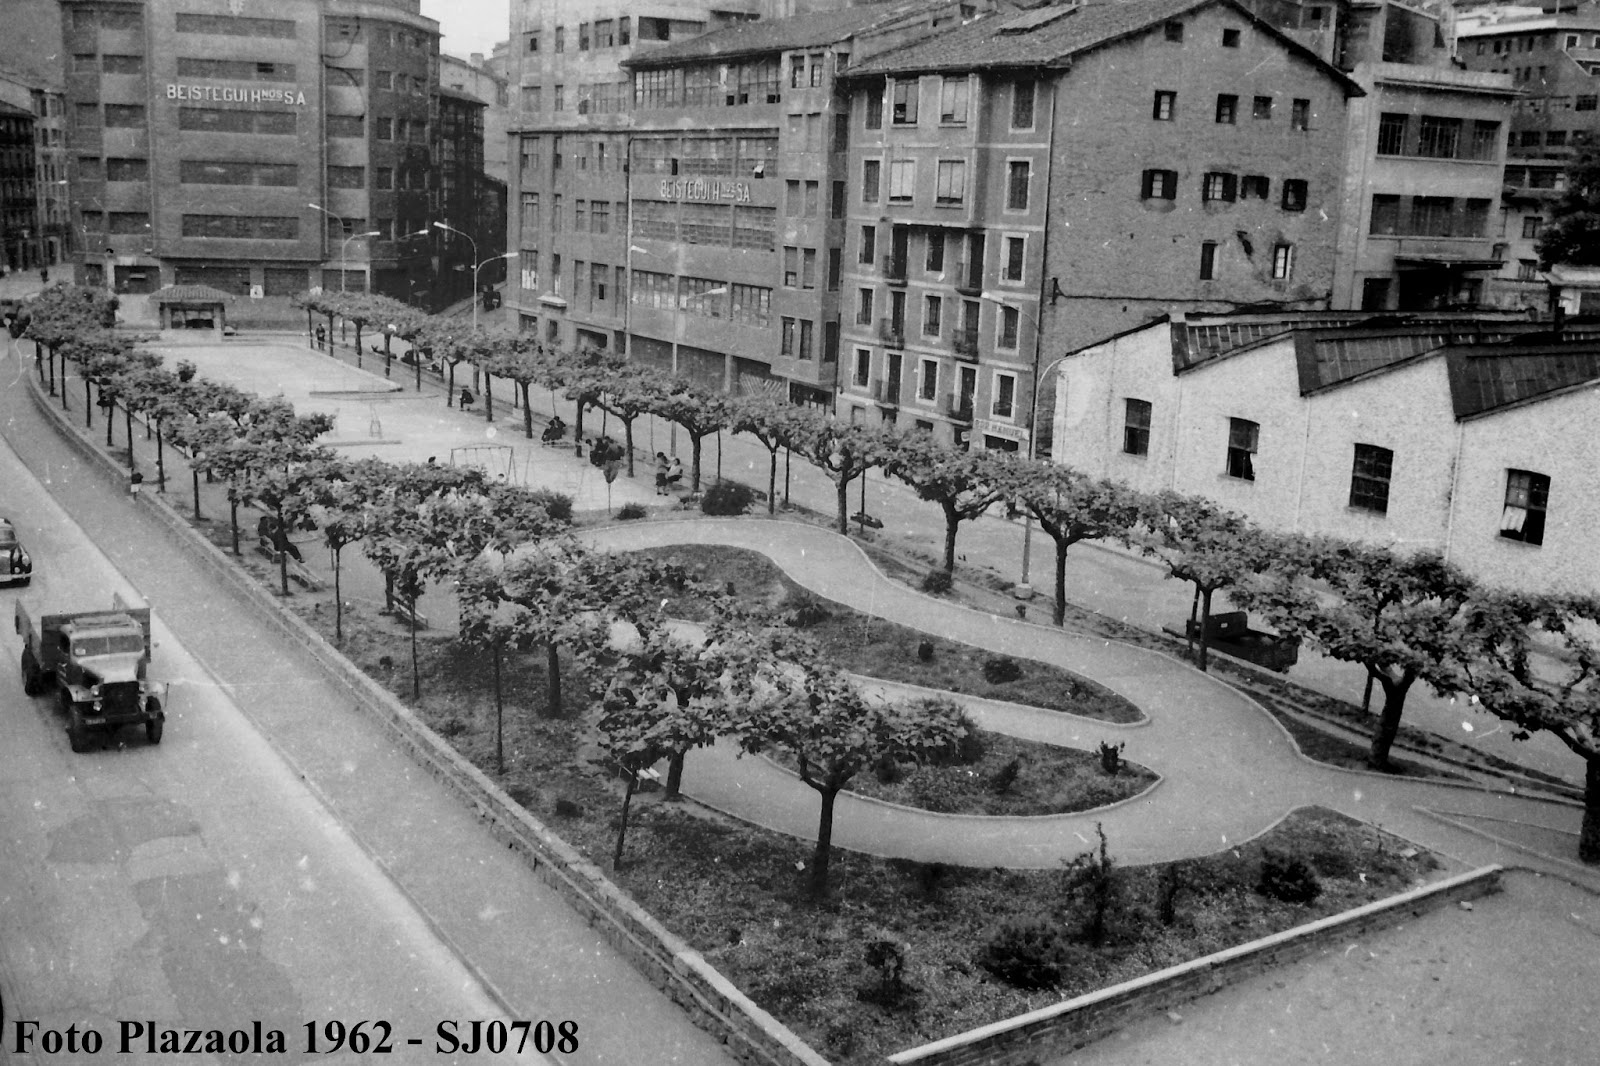 Urkuzuko parkia (Plazaola, 1962)